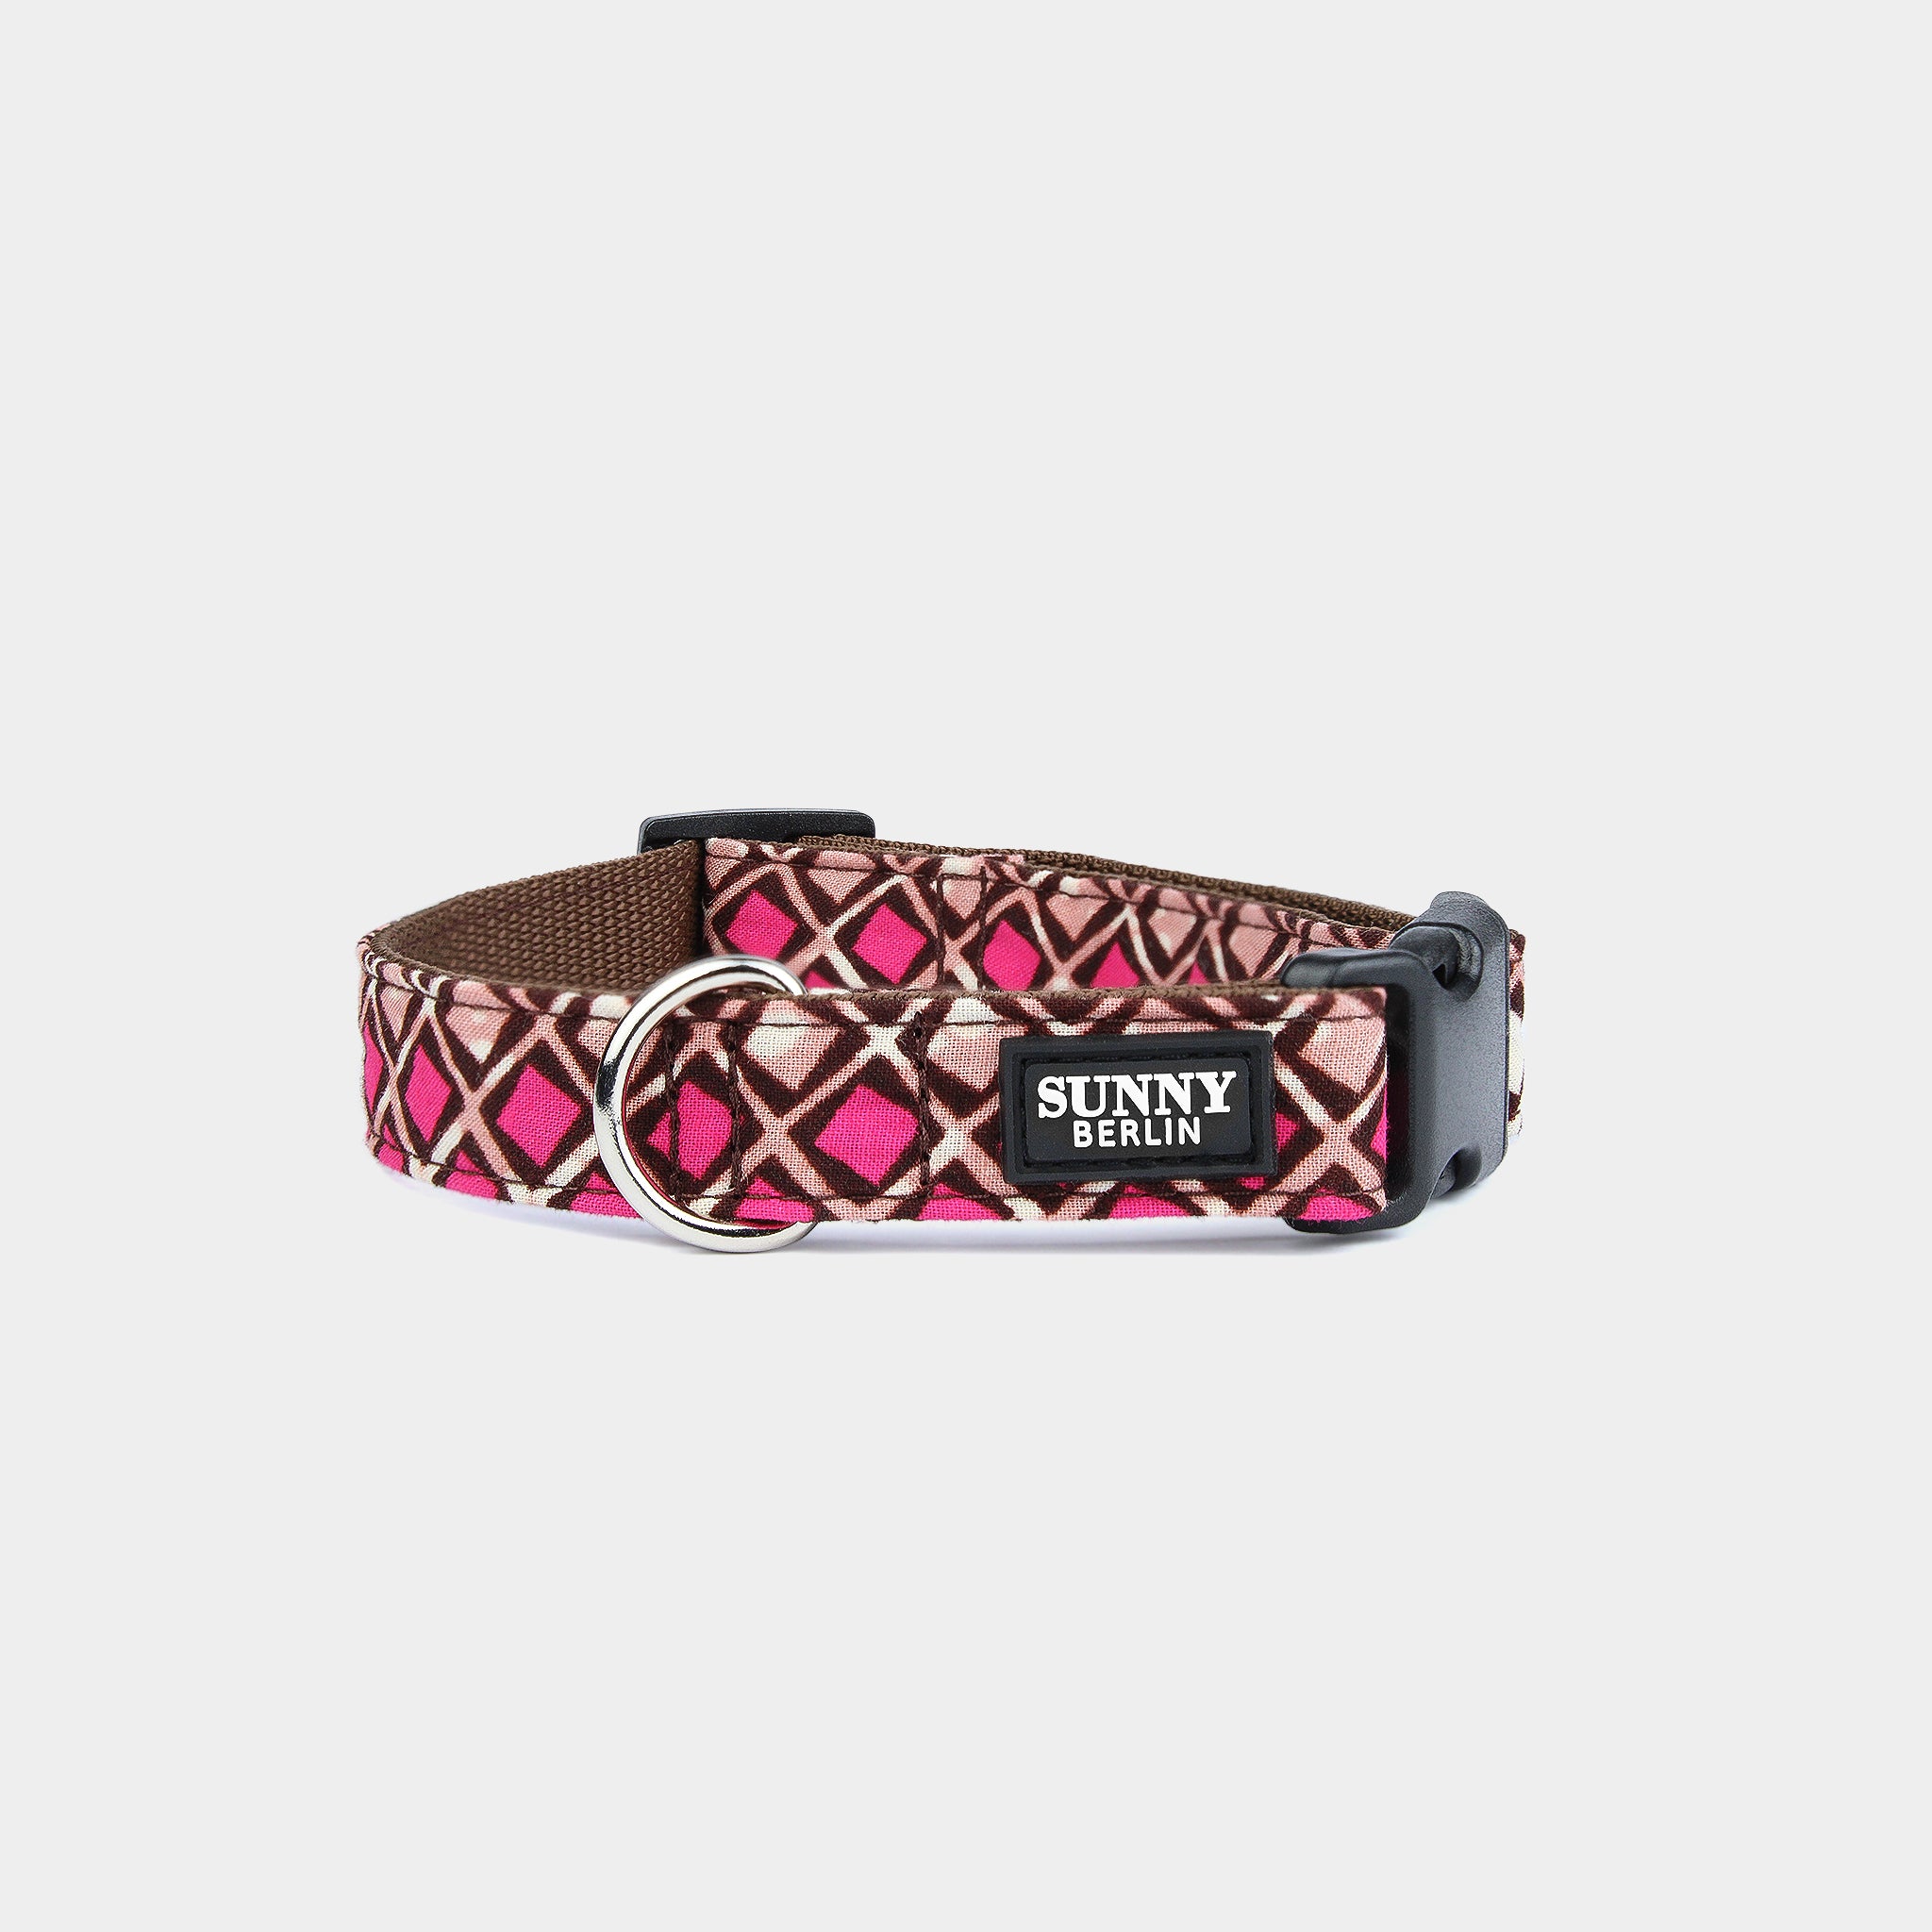 Braunes Hundehalsband mit afrikanischem Muster in pink